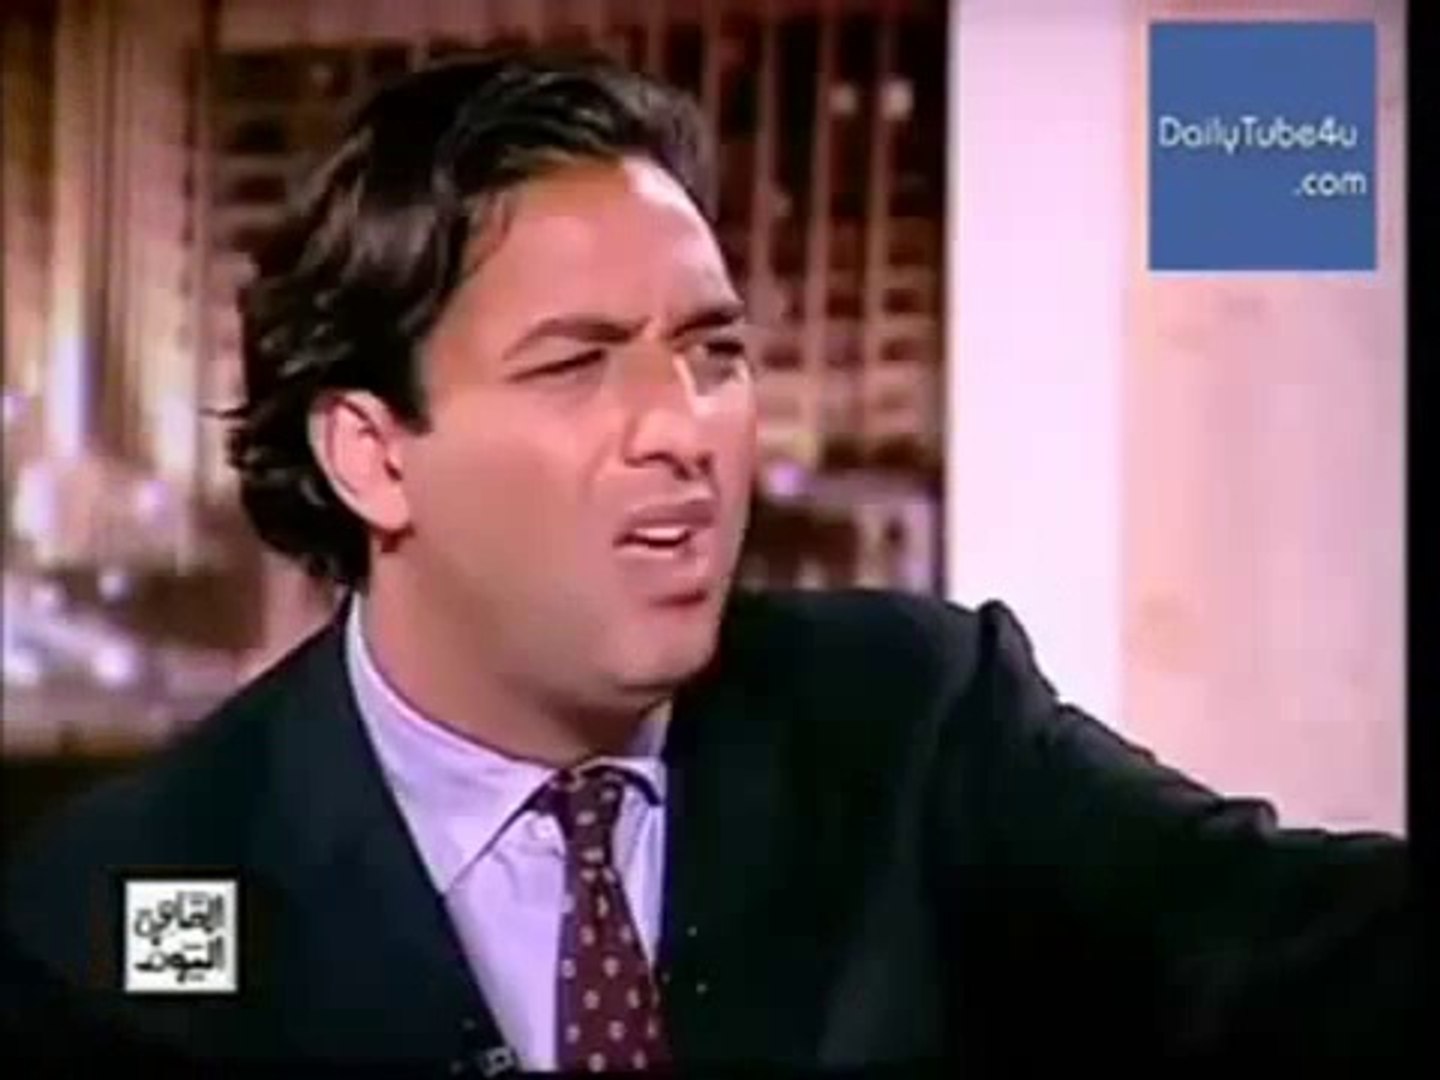 حلقة ميدو مع عمرو اديب فى القاهرة اليوم - فيديو Dailymotion